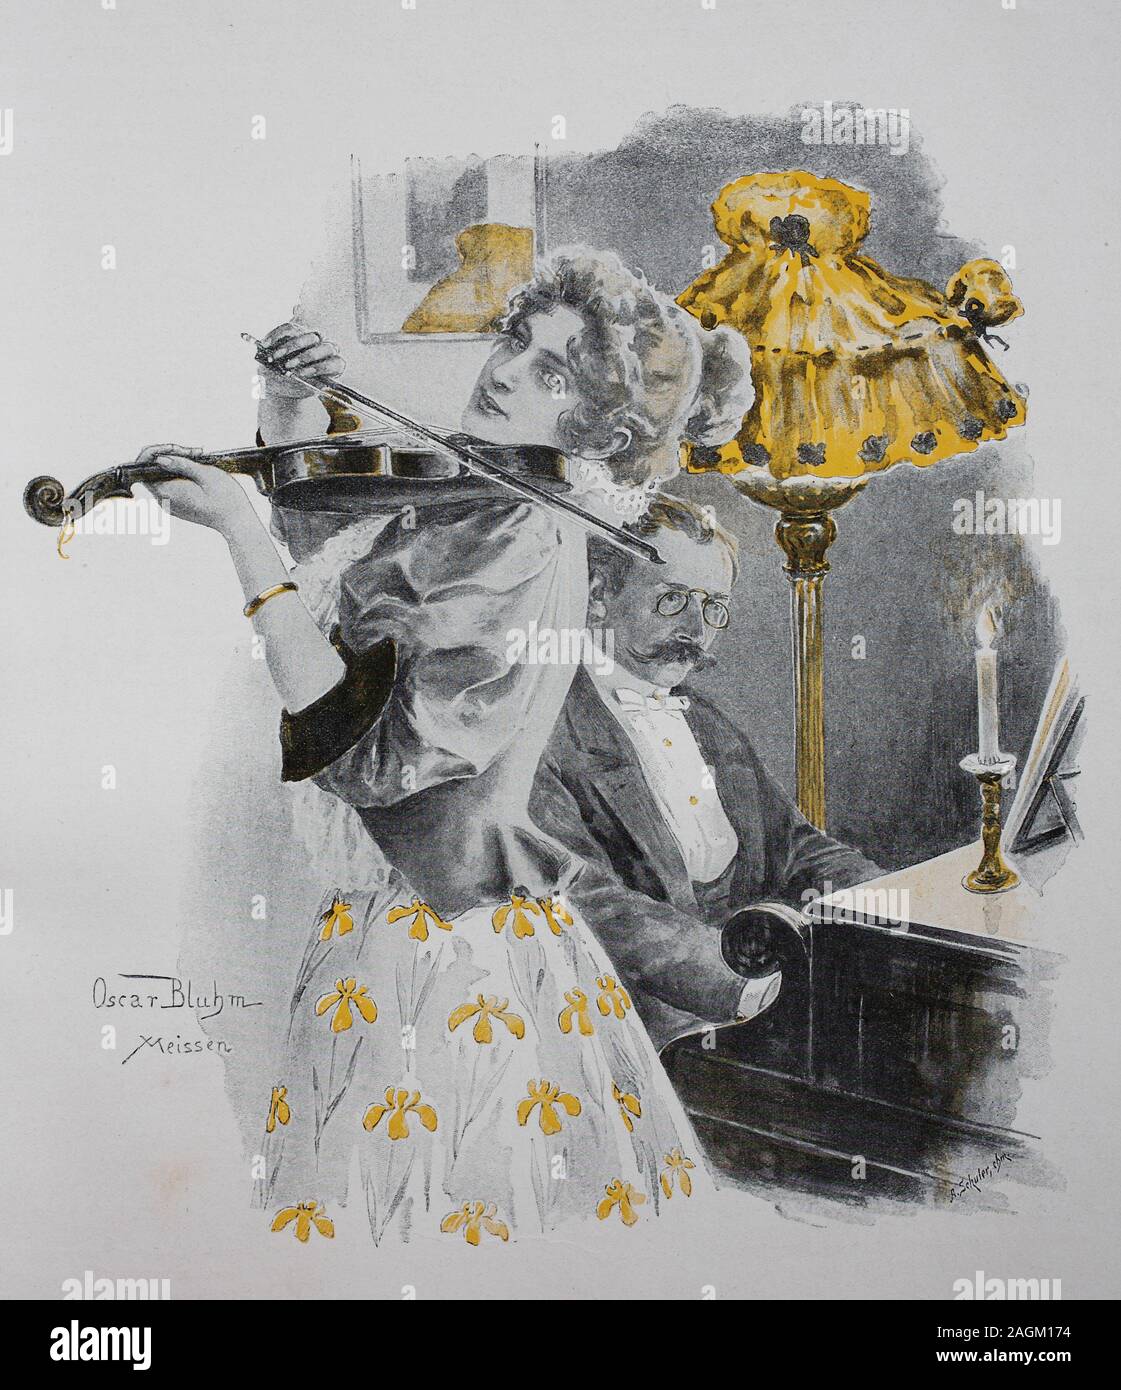 Duett, musique, femme joue du violon, l'homme joue du piano, de l'estampe originale à partir de l'année 1899, Musik, spielt Frau Geige, Mann spielt Klavier, Reproduktion von Originalvorlage aus dem 19. Jahrhundert, OECD numérique Banque D'Images